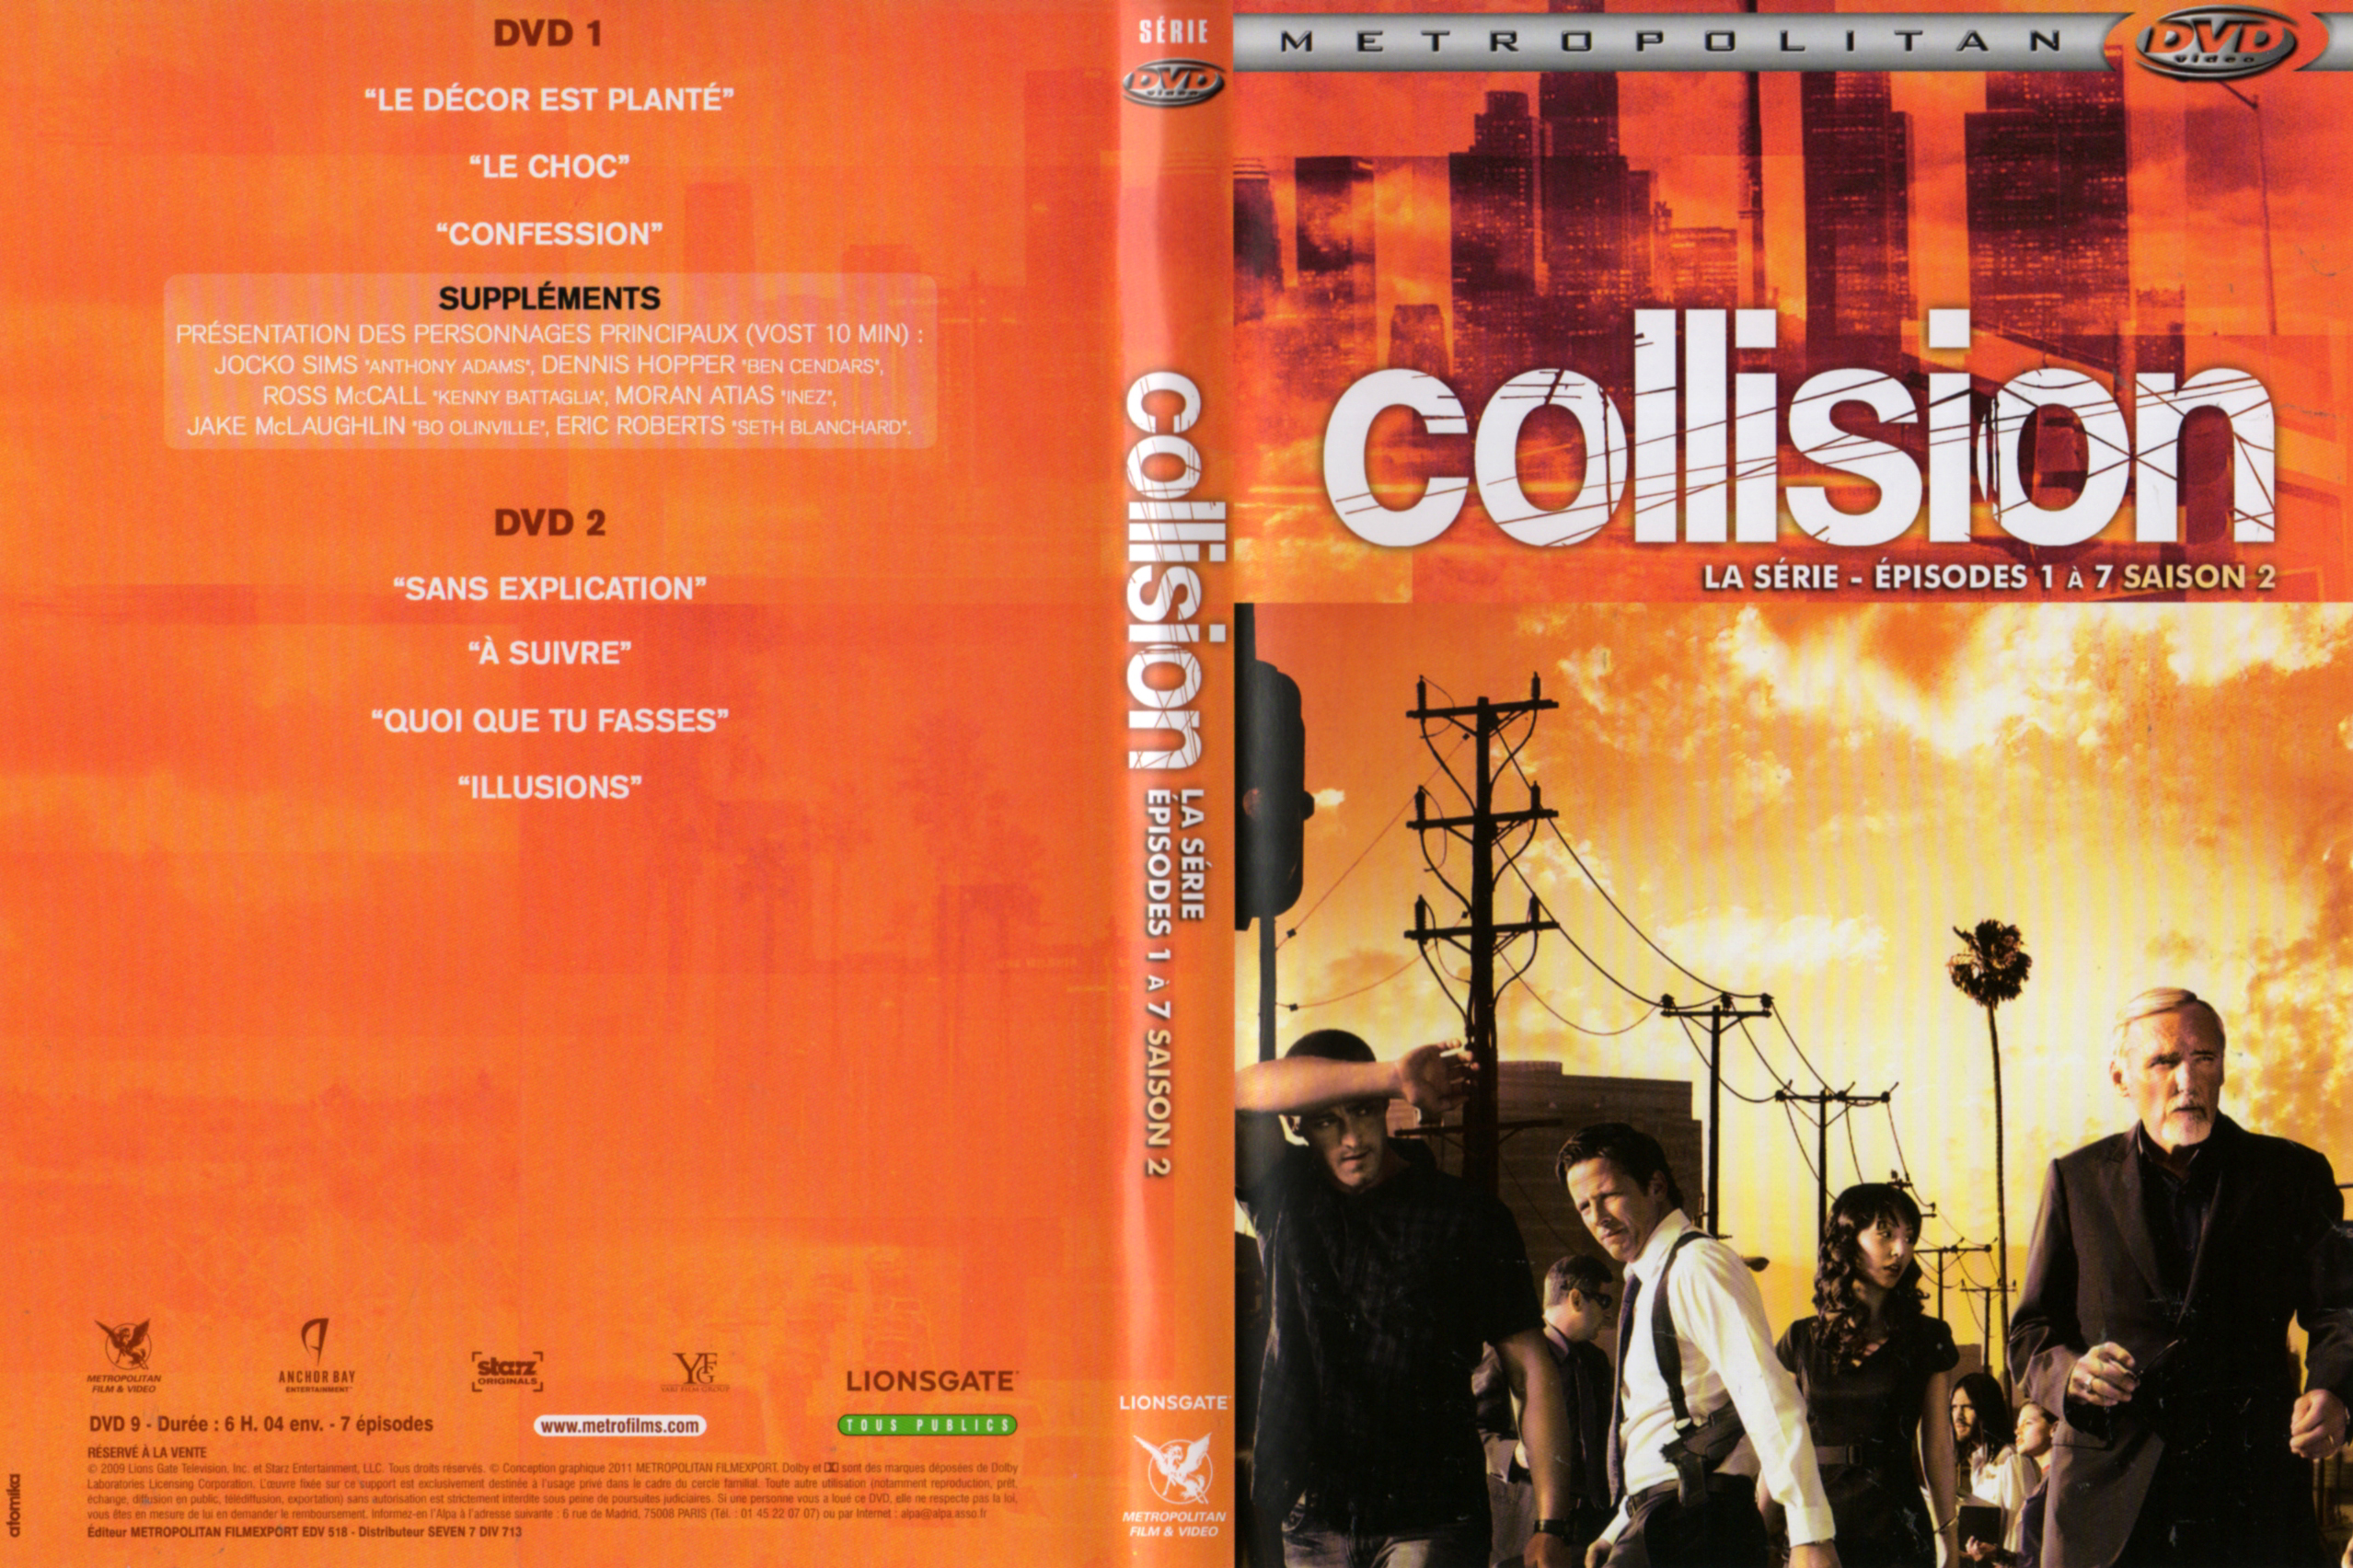 Jaquette DVD Collision La srie Saison 2 DVD 1